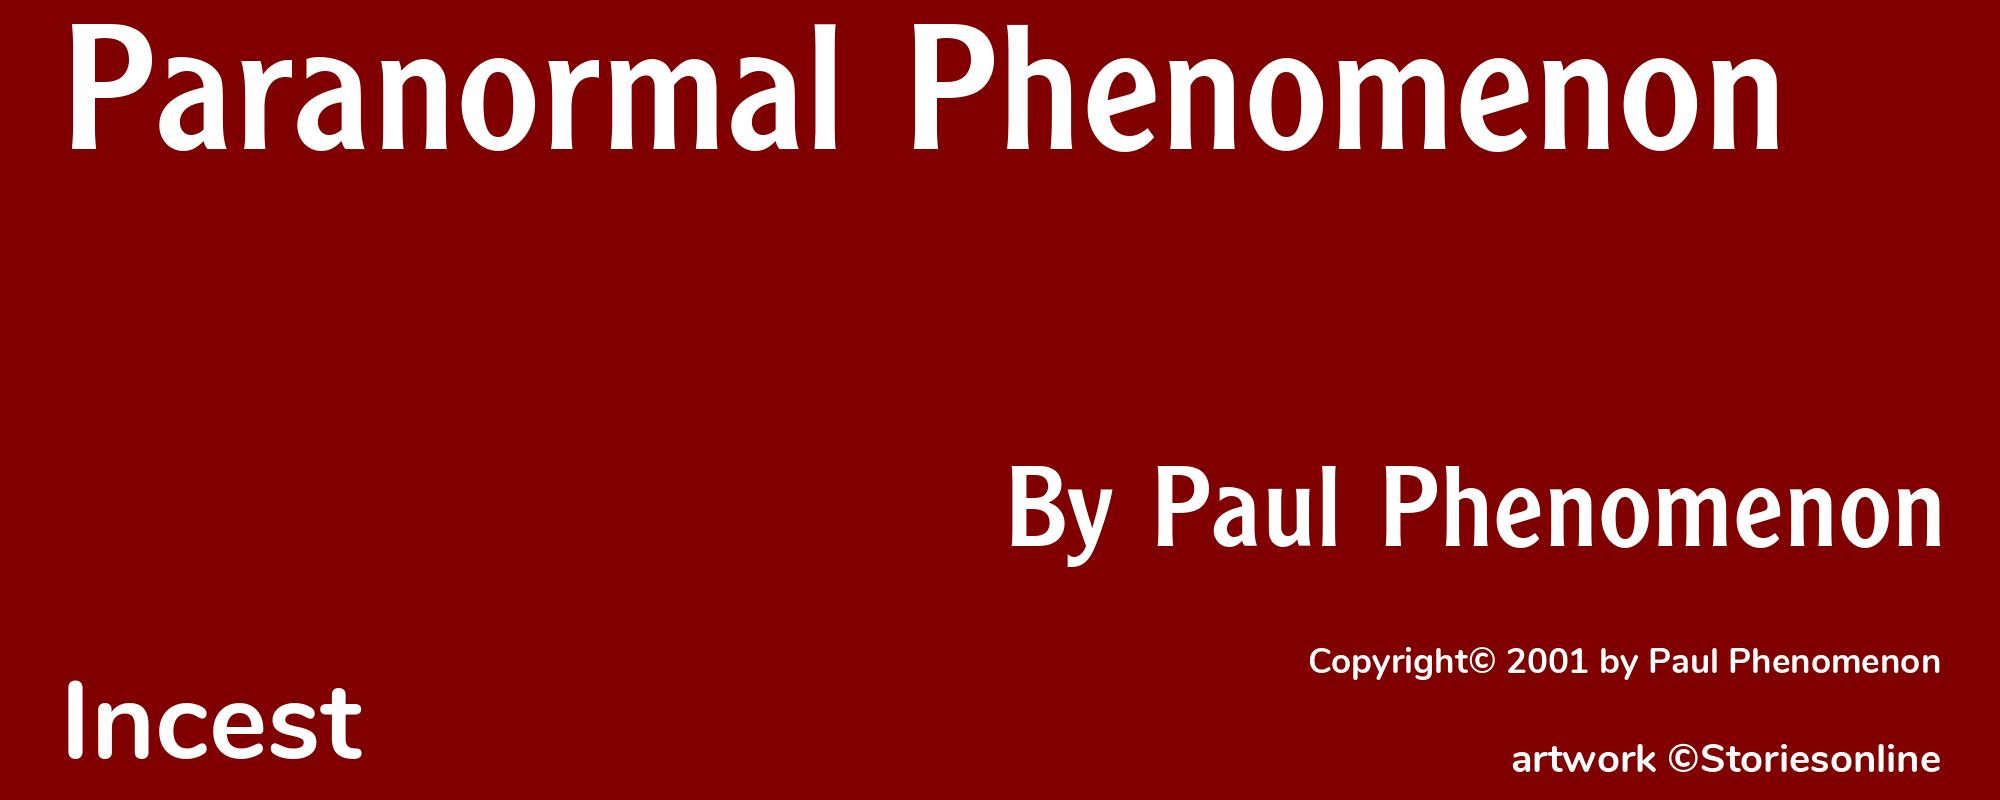 Paranormal Phenomenon - Cover